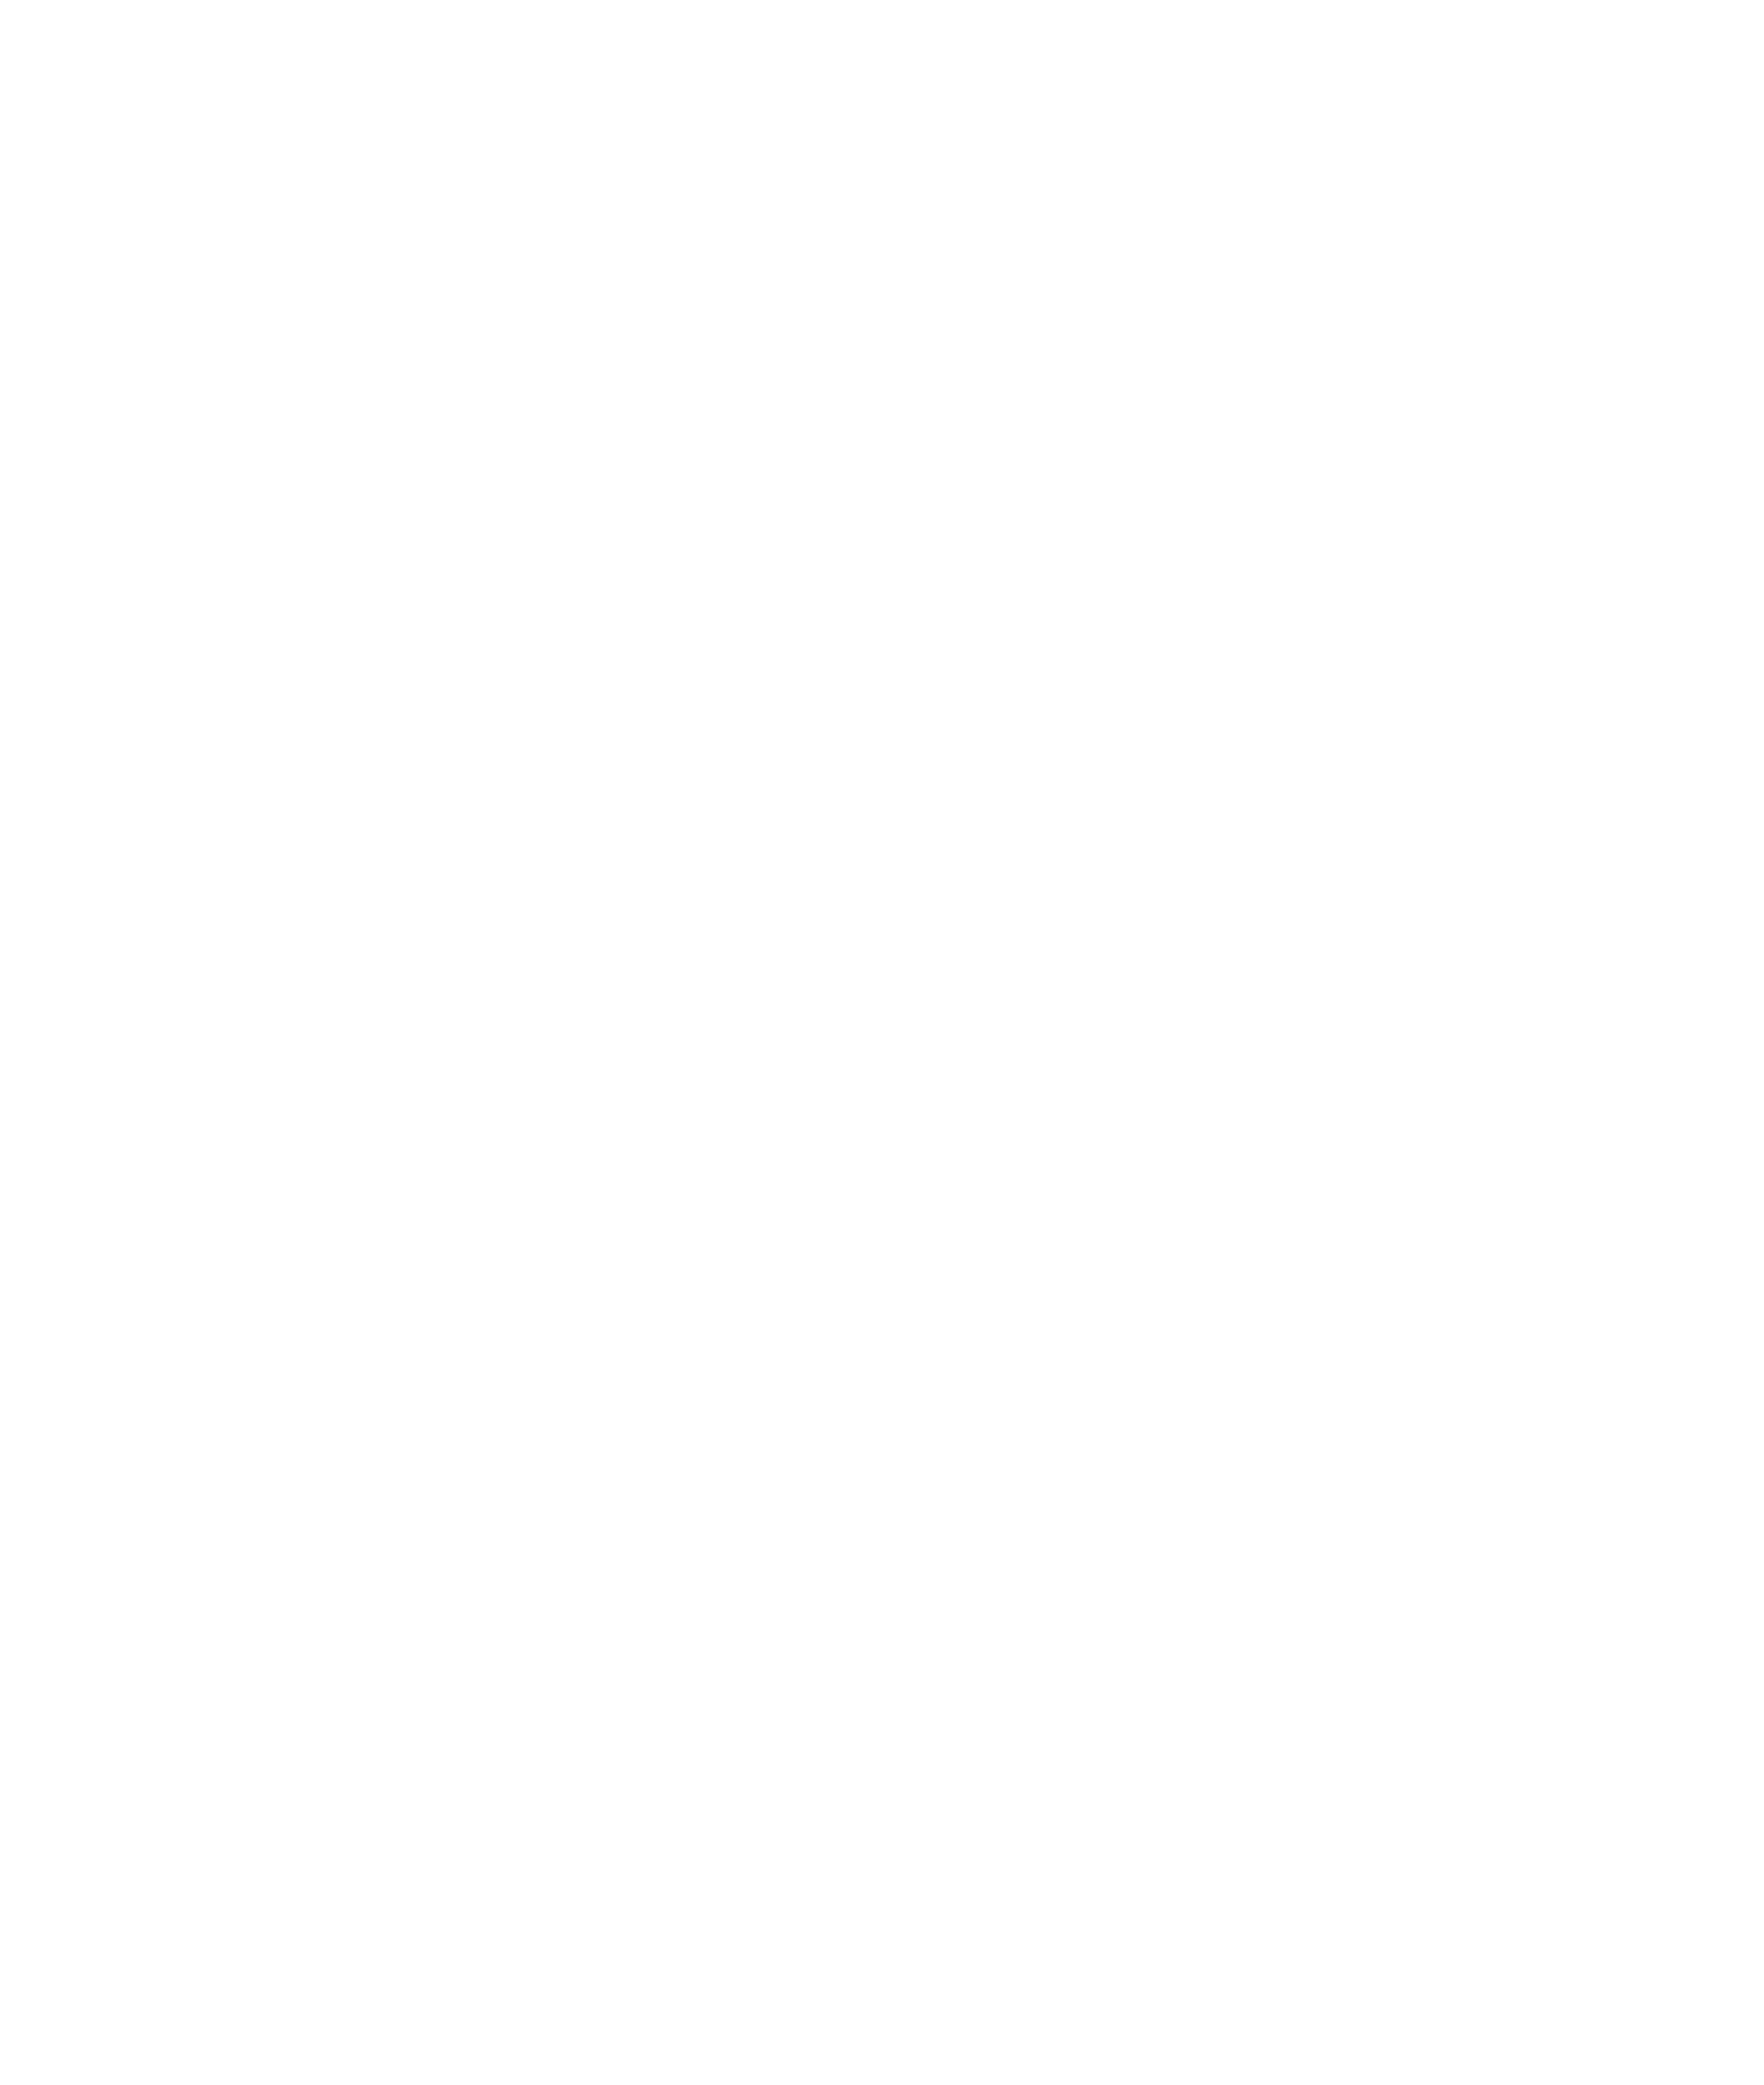 DoggoShirt.com